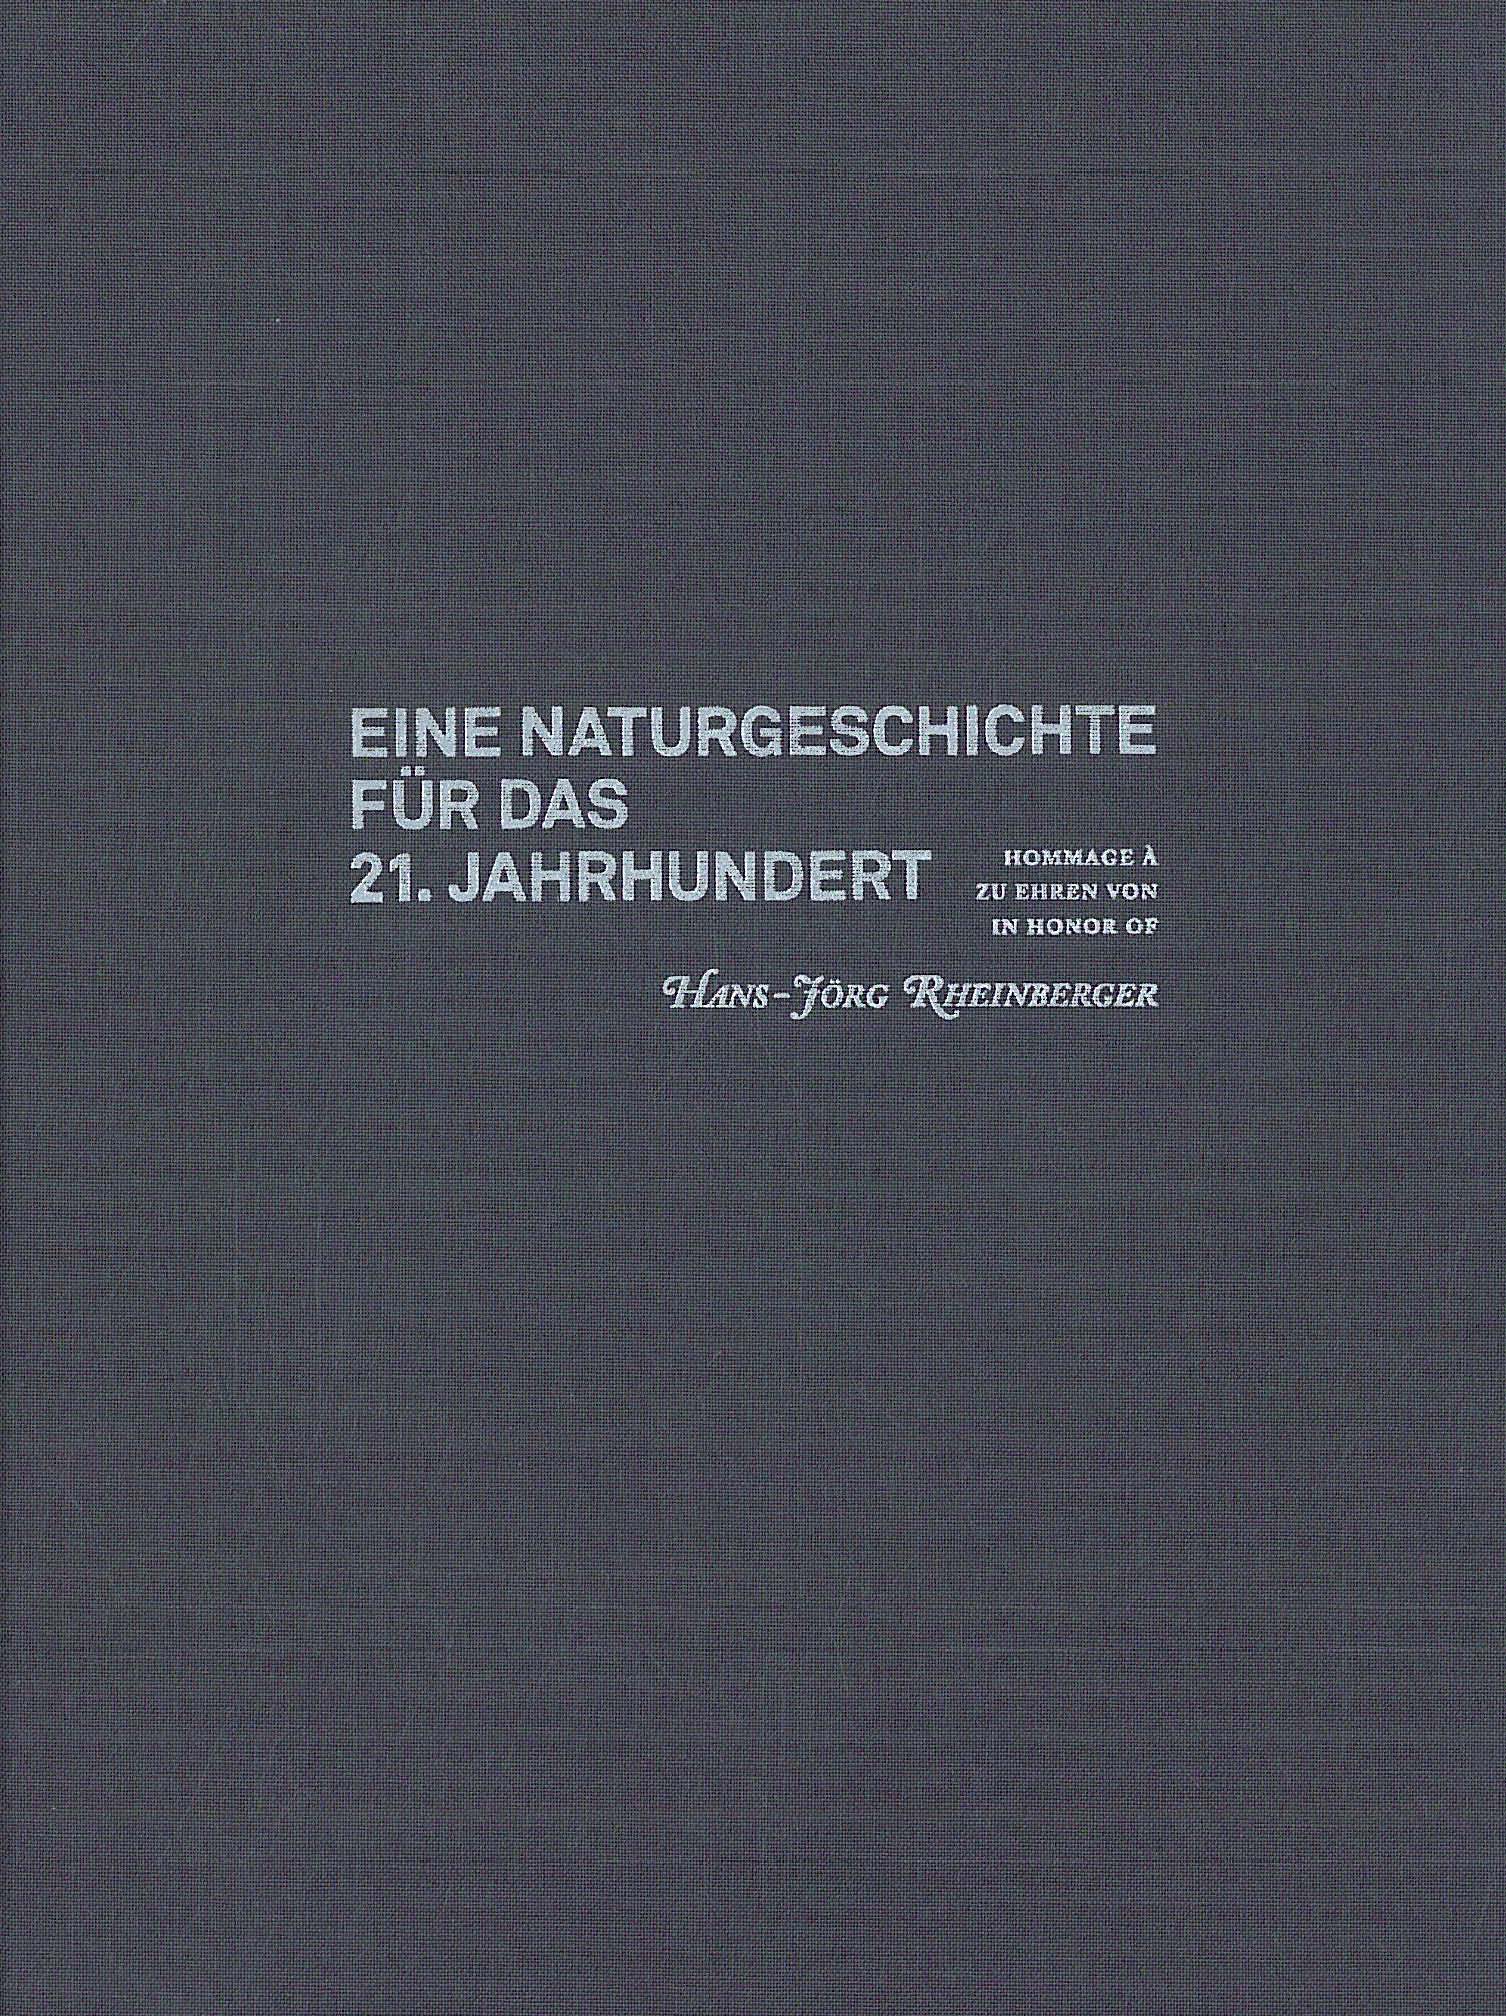 book cover: Safia Azzouni et al.: Eine Naturgeschichte für das 21. Jahrhundert, in honor of Hans-Jörg Rheinberger (2011)